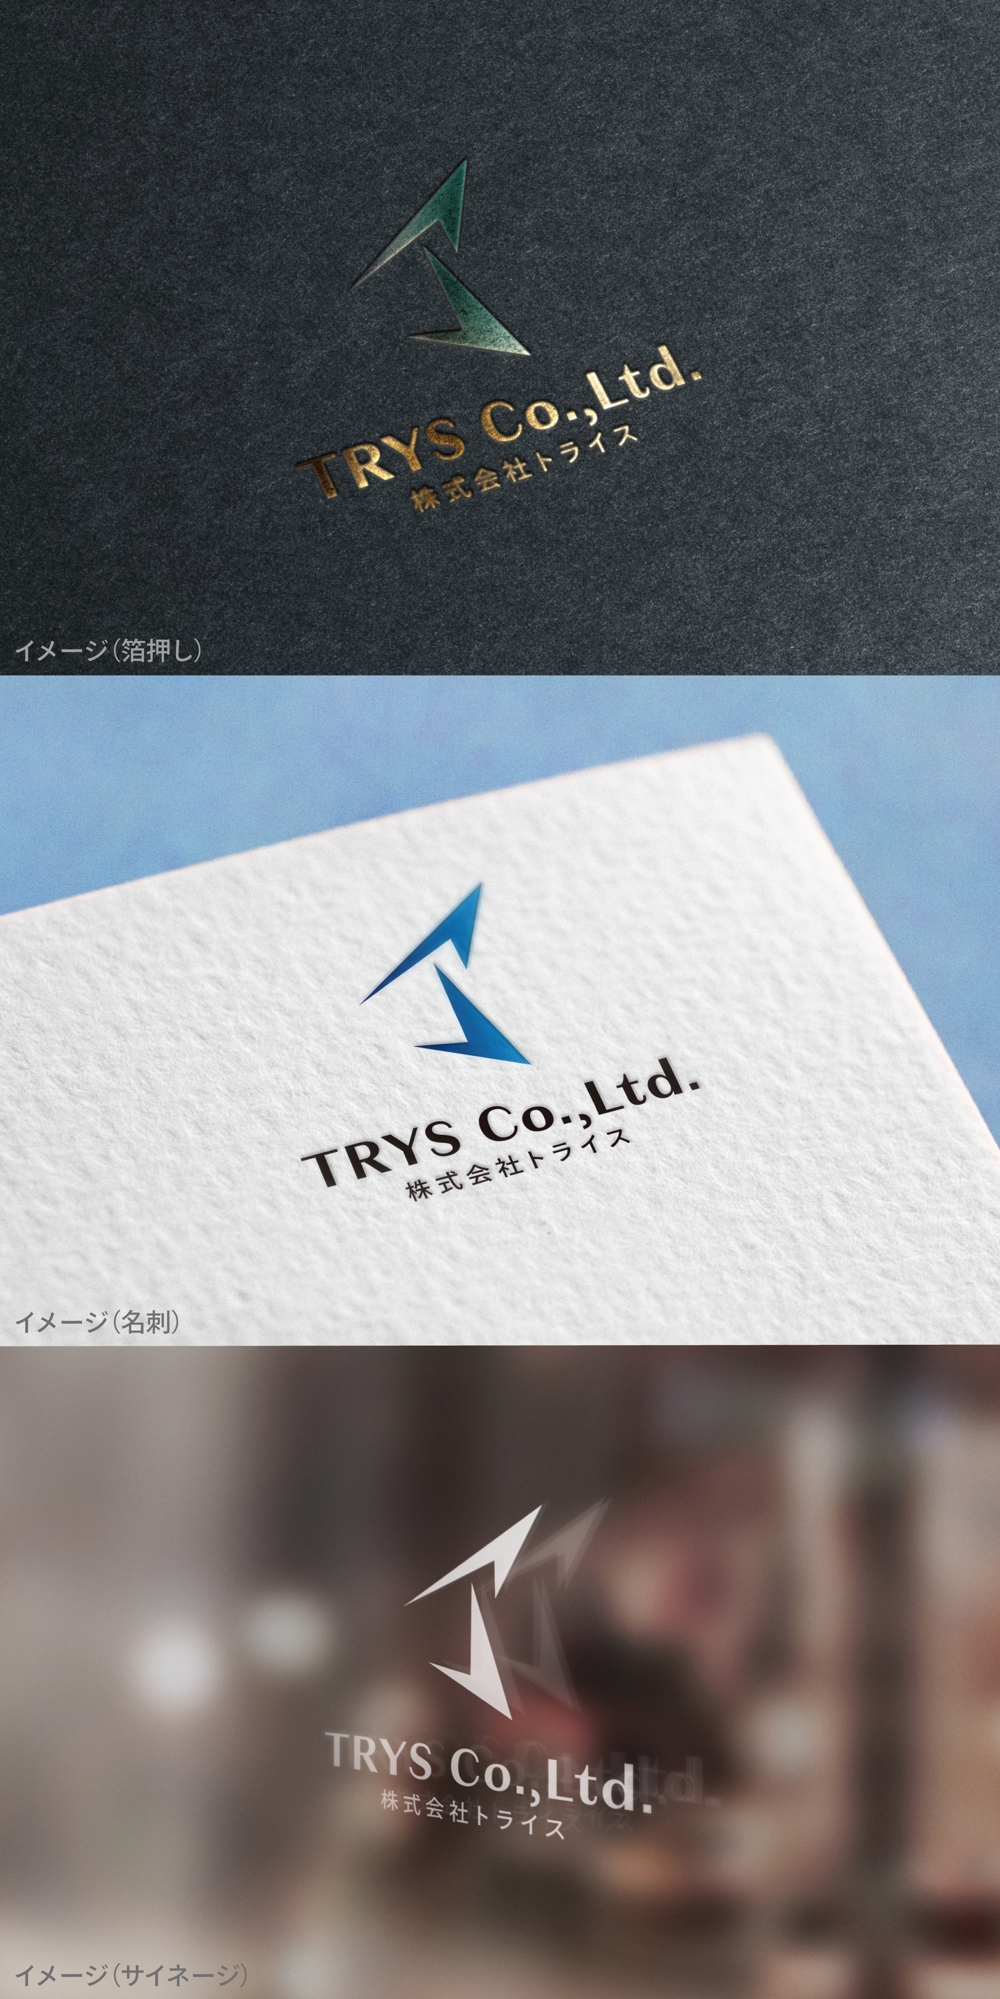 TRYS Co.,Ltd._logo01_01.jpg